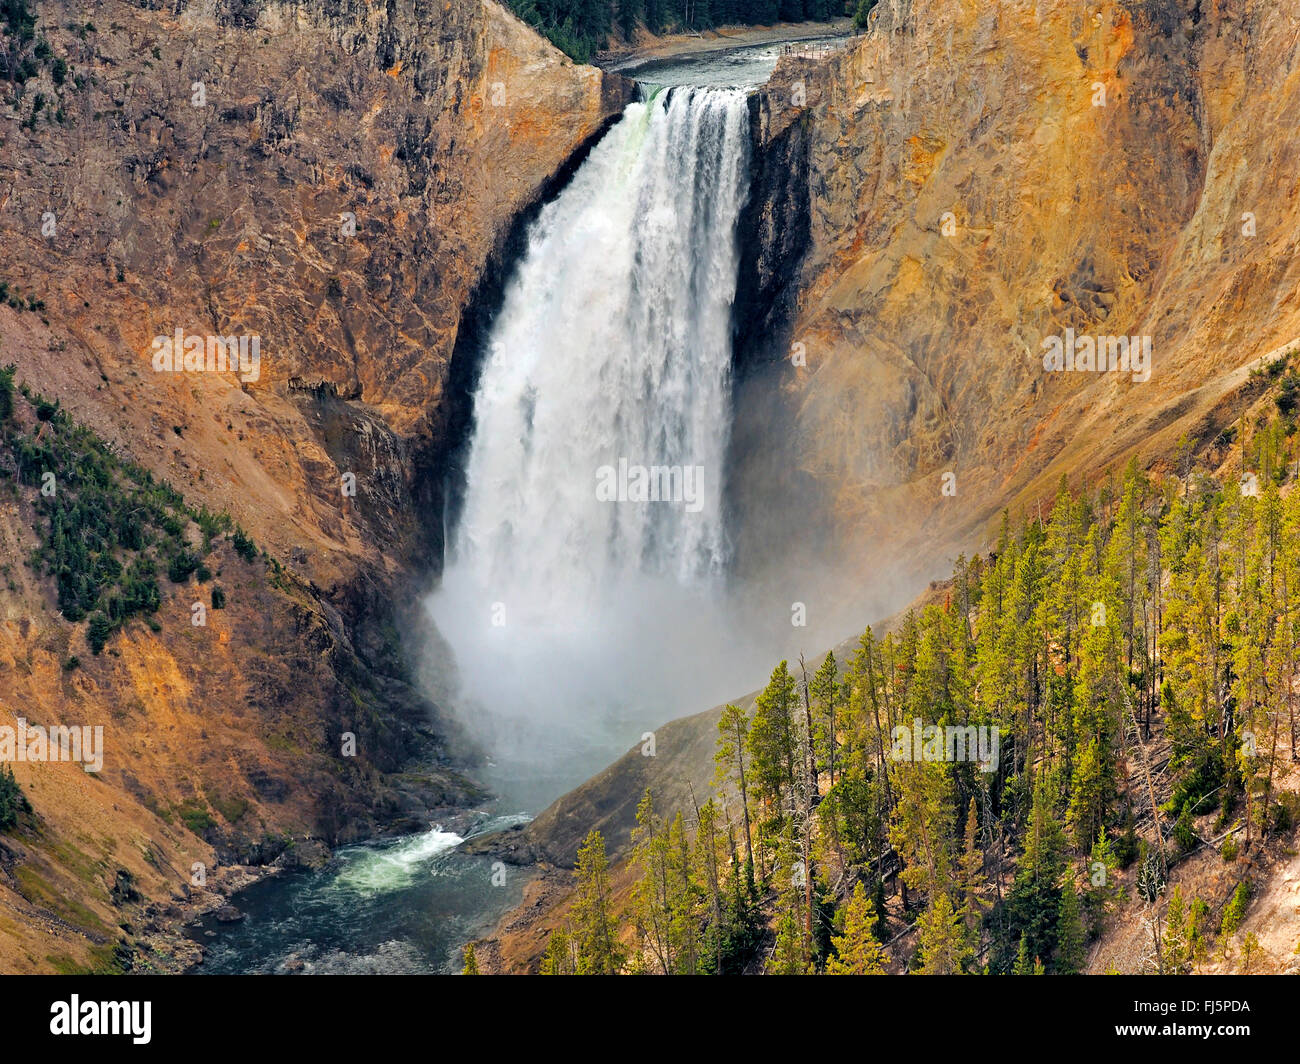 Grand Canyon de la Yellowstone, Lower Falls, États-Unis d'Amérique, Wyoming, Yellowstone National Park Banque D'Images